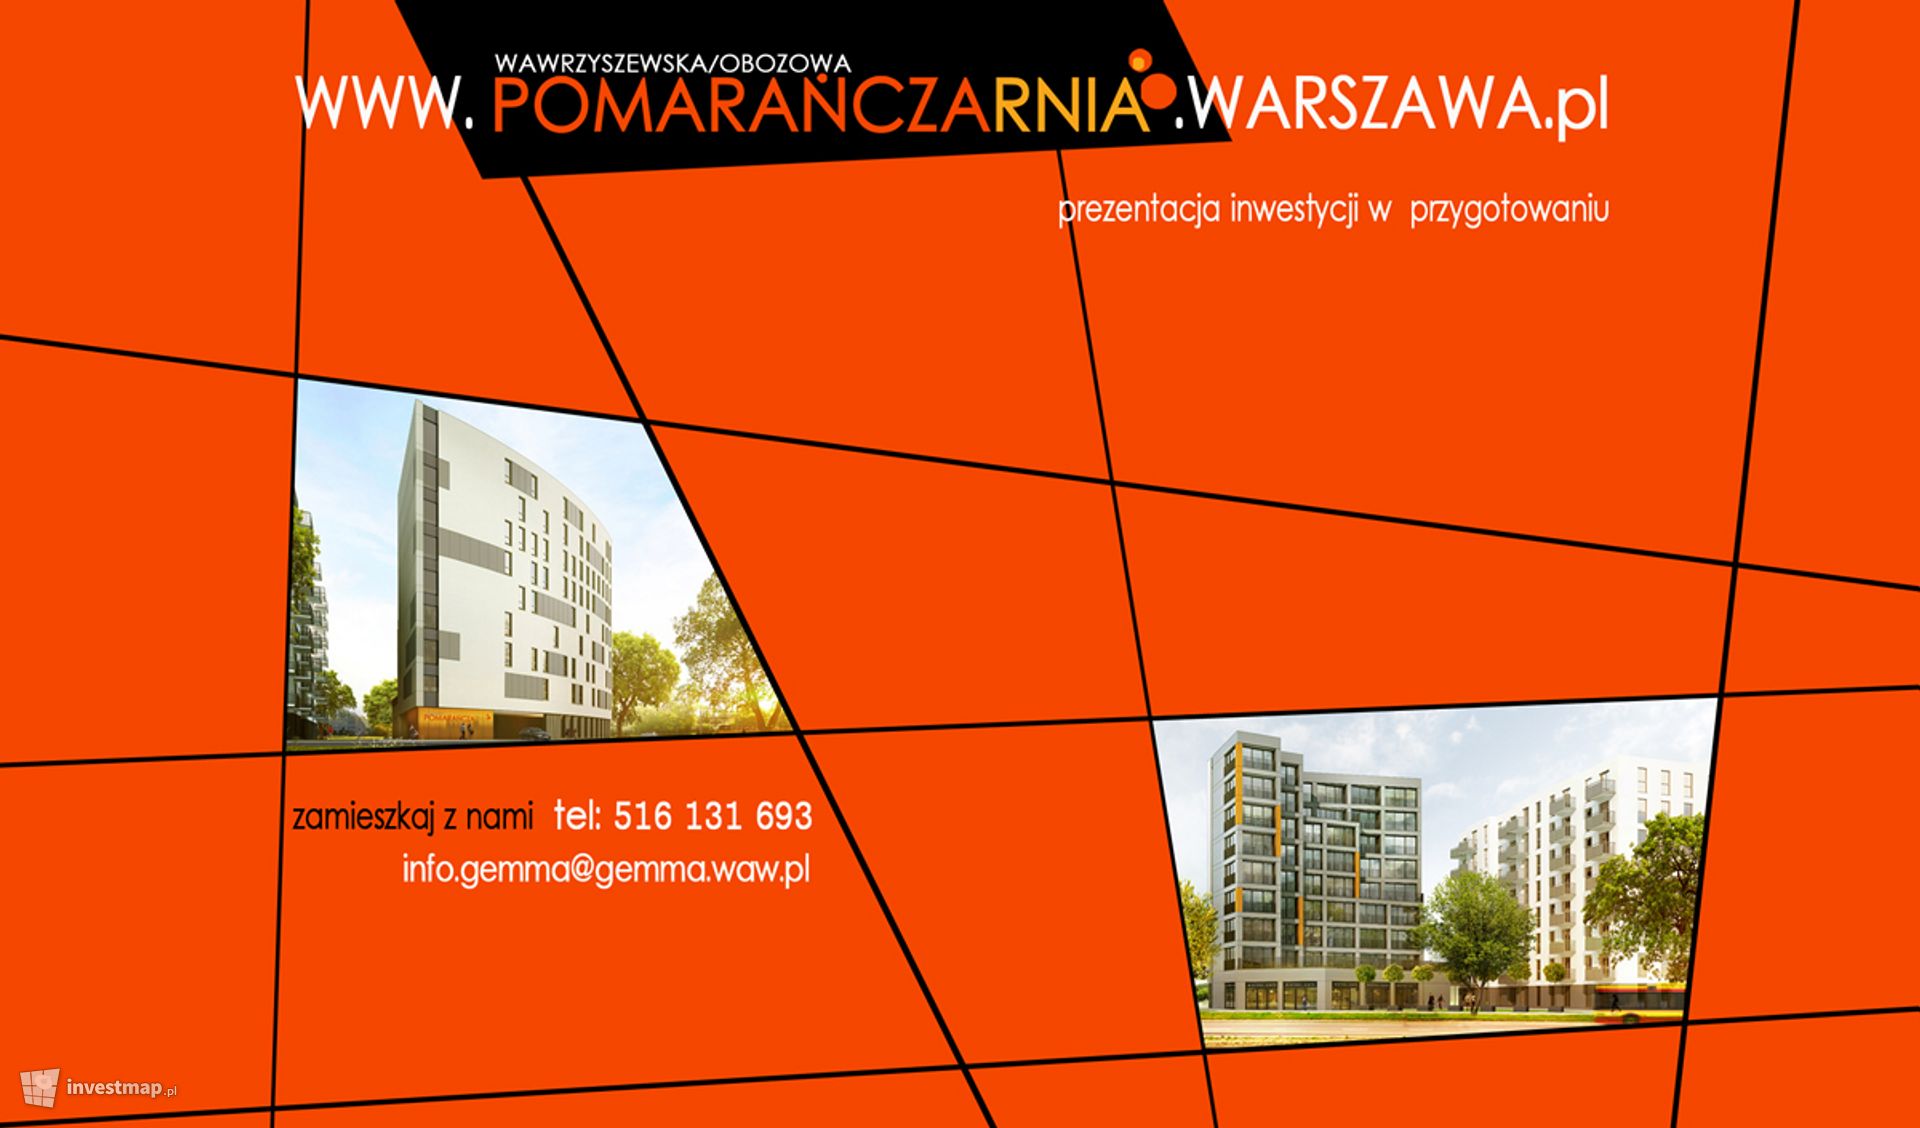 [Warszawa] Apartamentowiec "Pomarańczarnia"